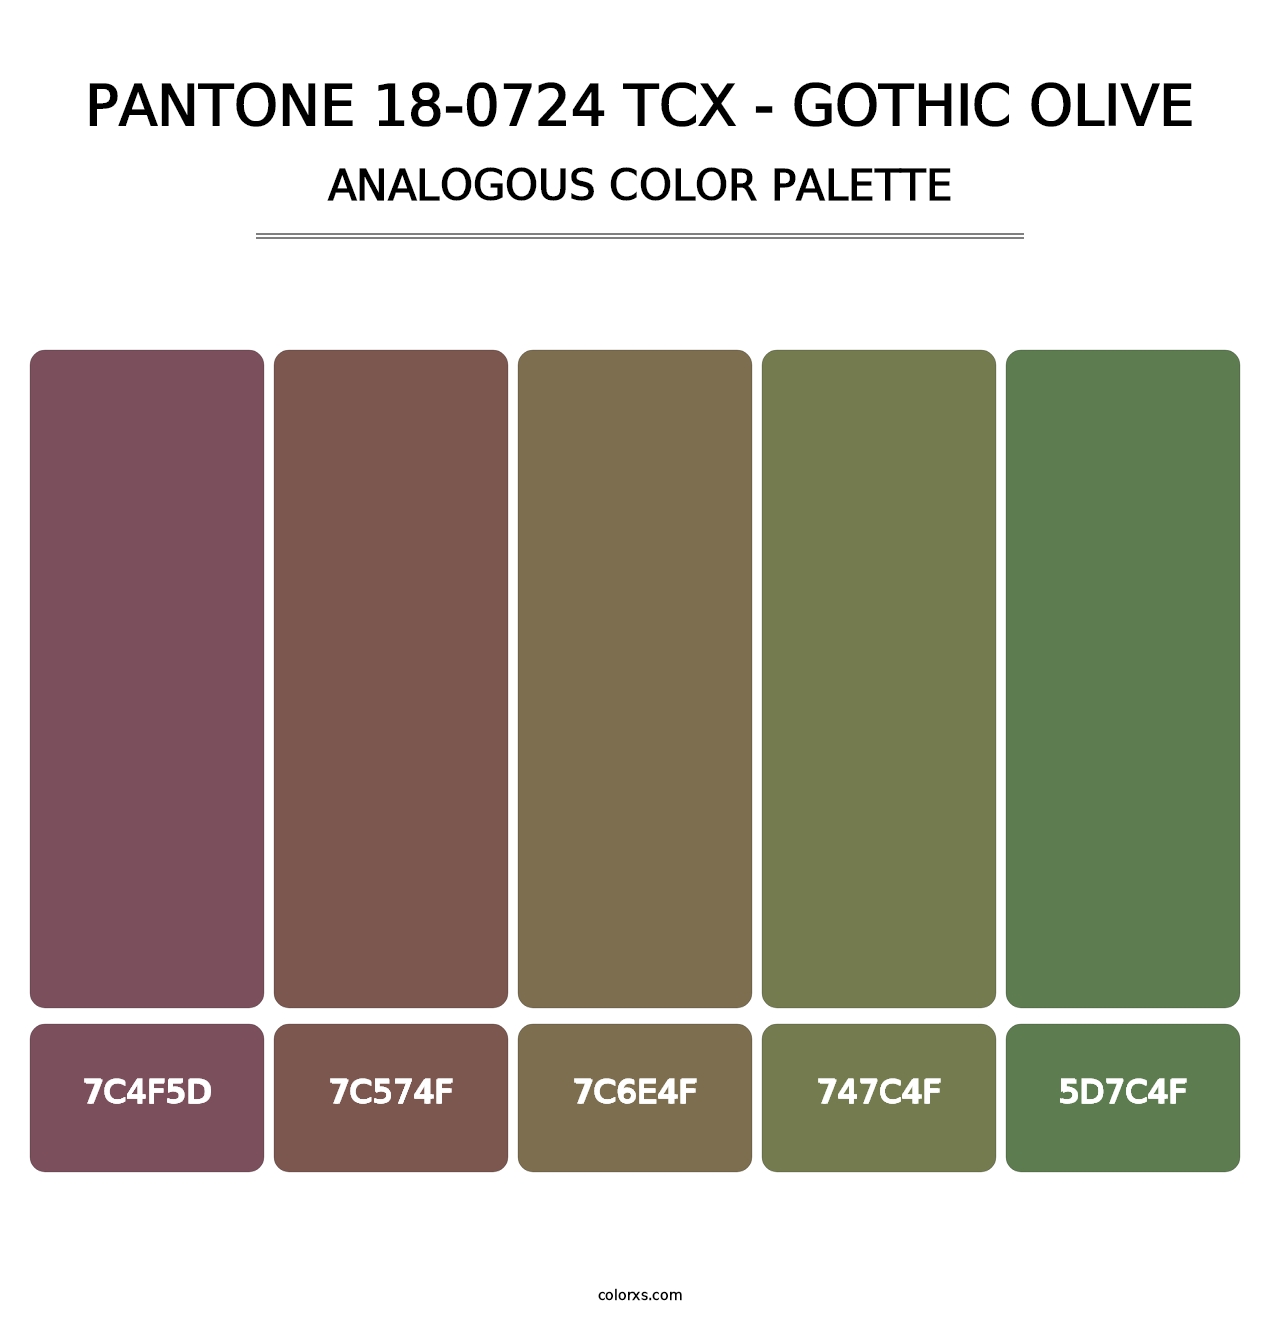 PANTONE 18-0724 TCX - Gothic Olive - Analogous Color Palette